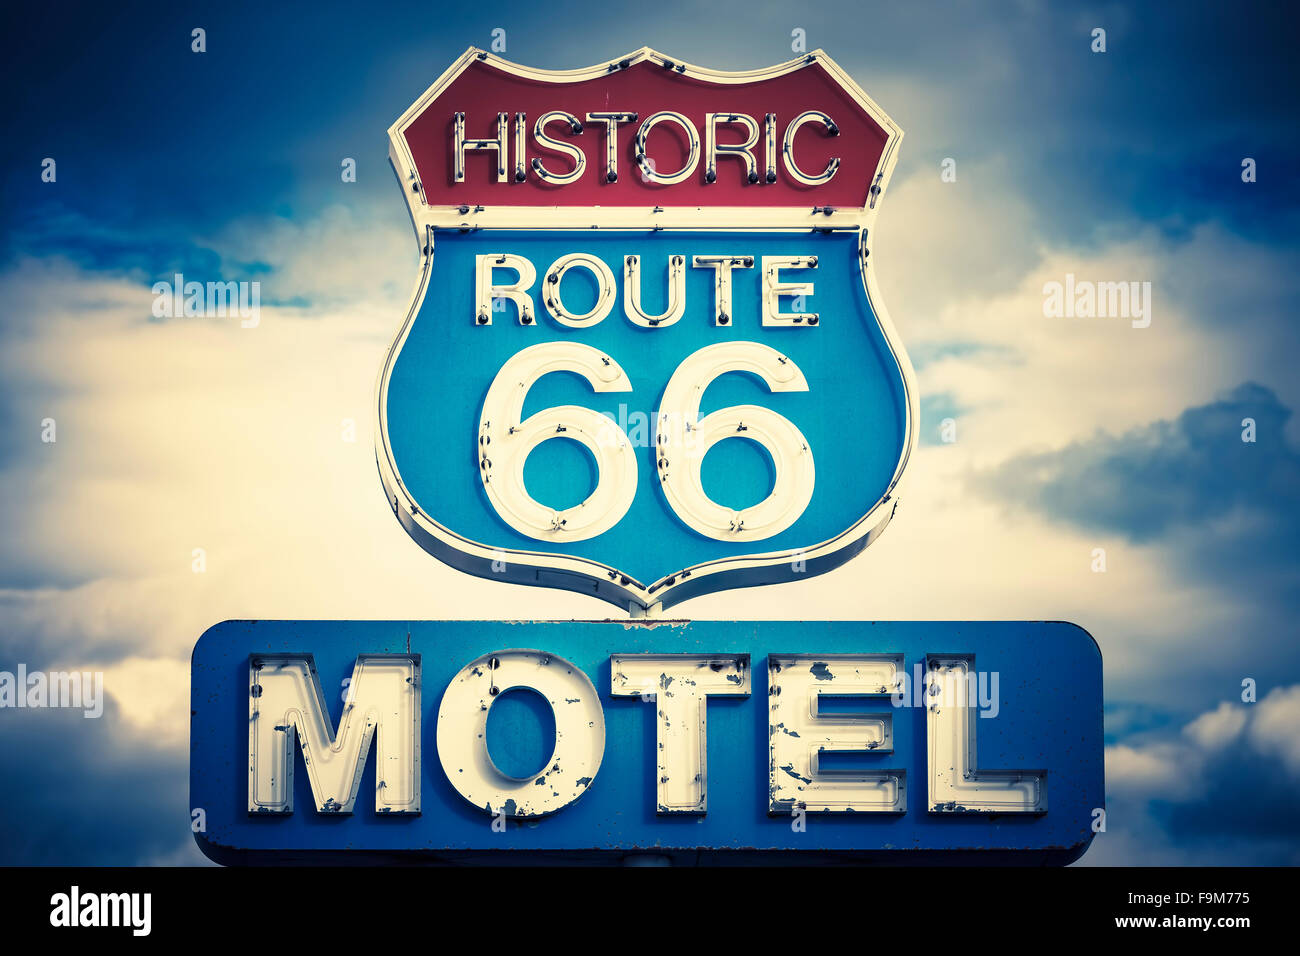 Dans l'esprit motel 66 historique road, USA Banque D'Images